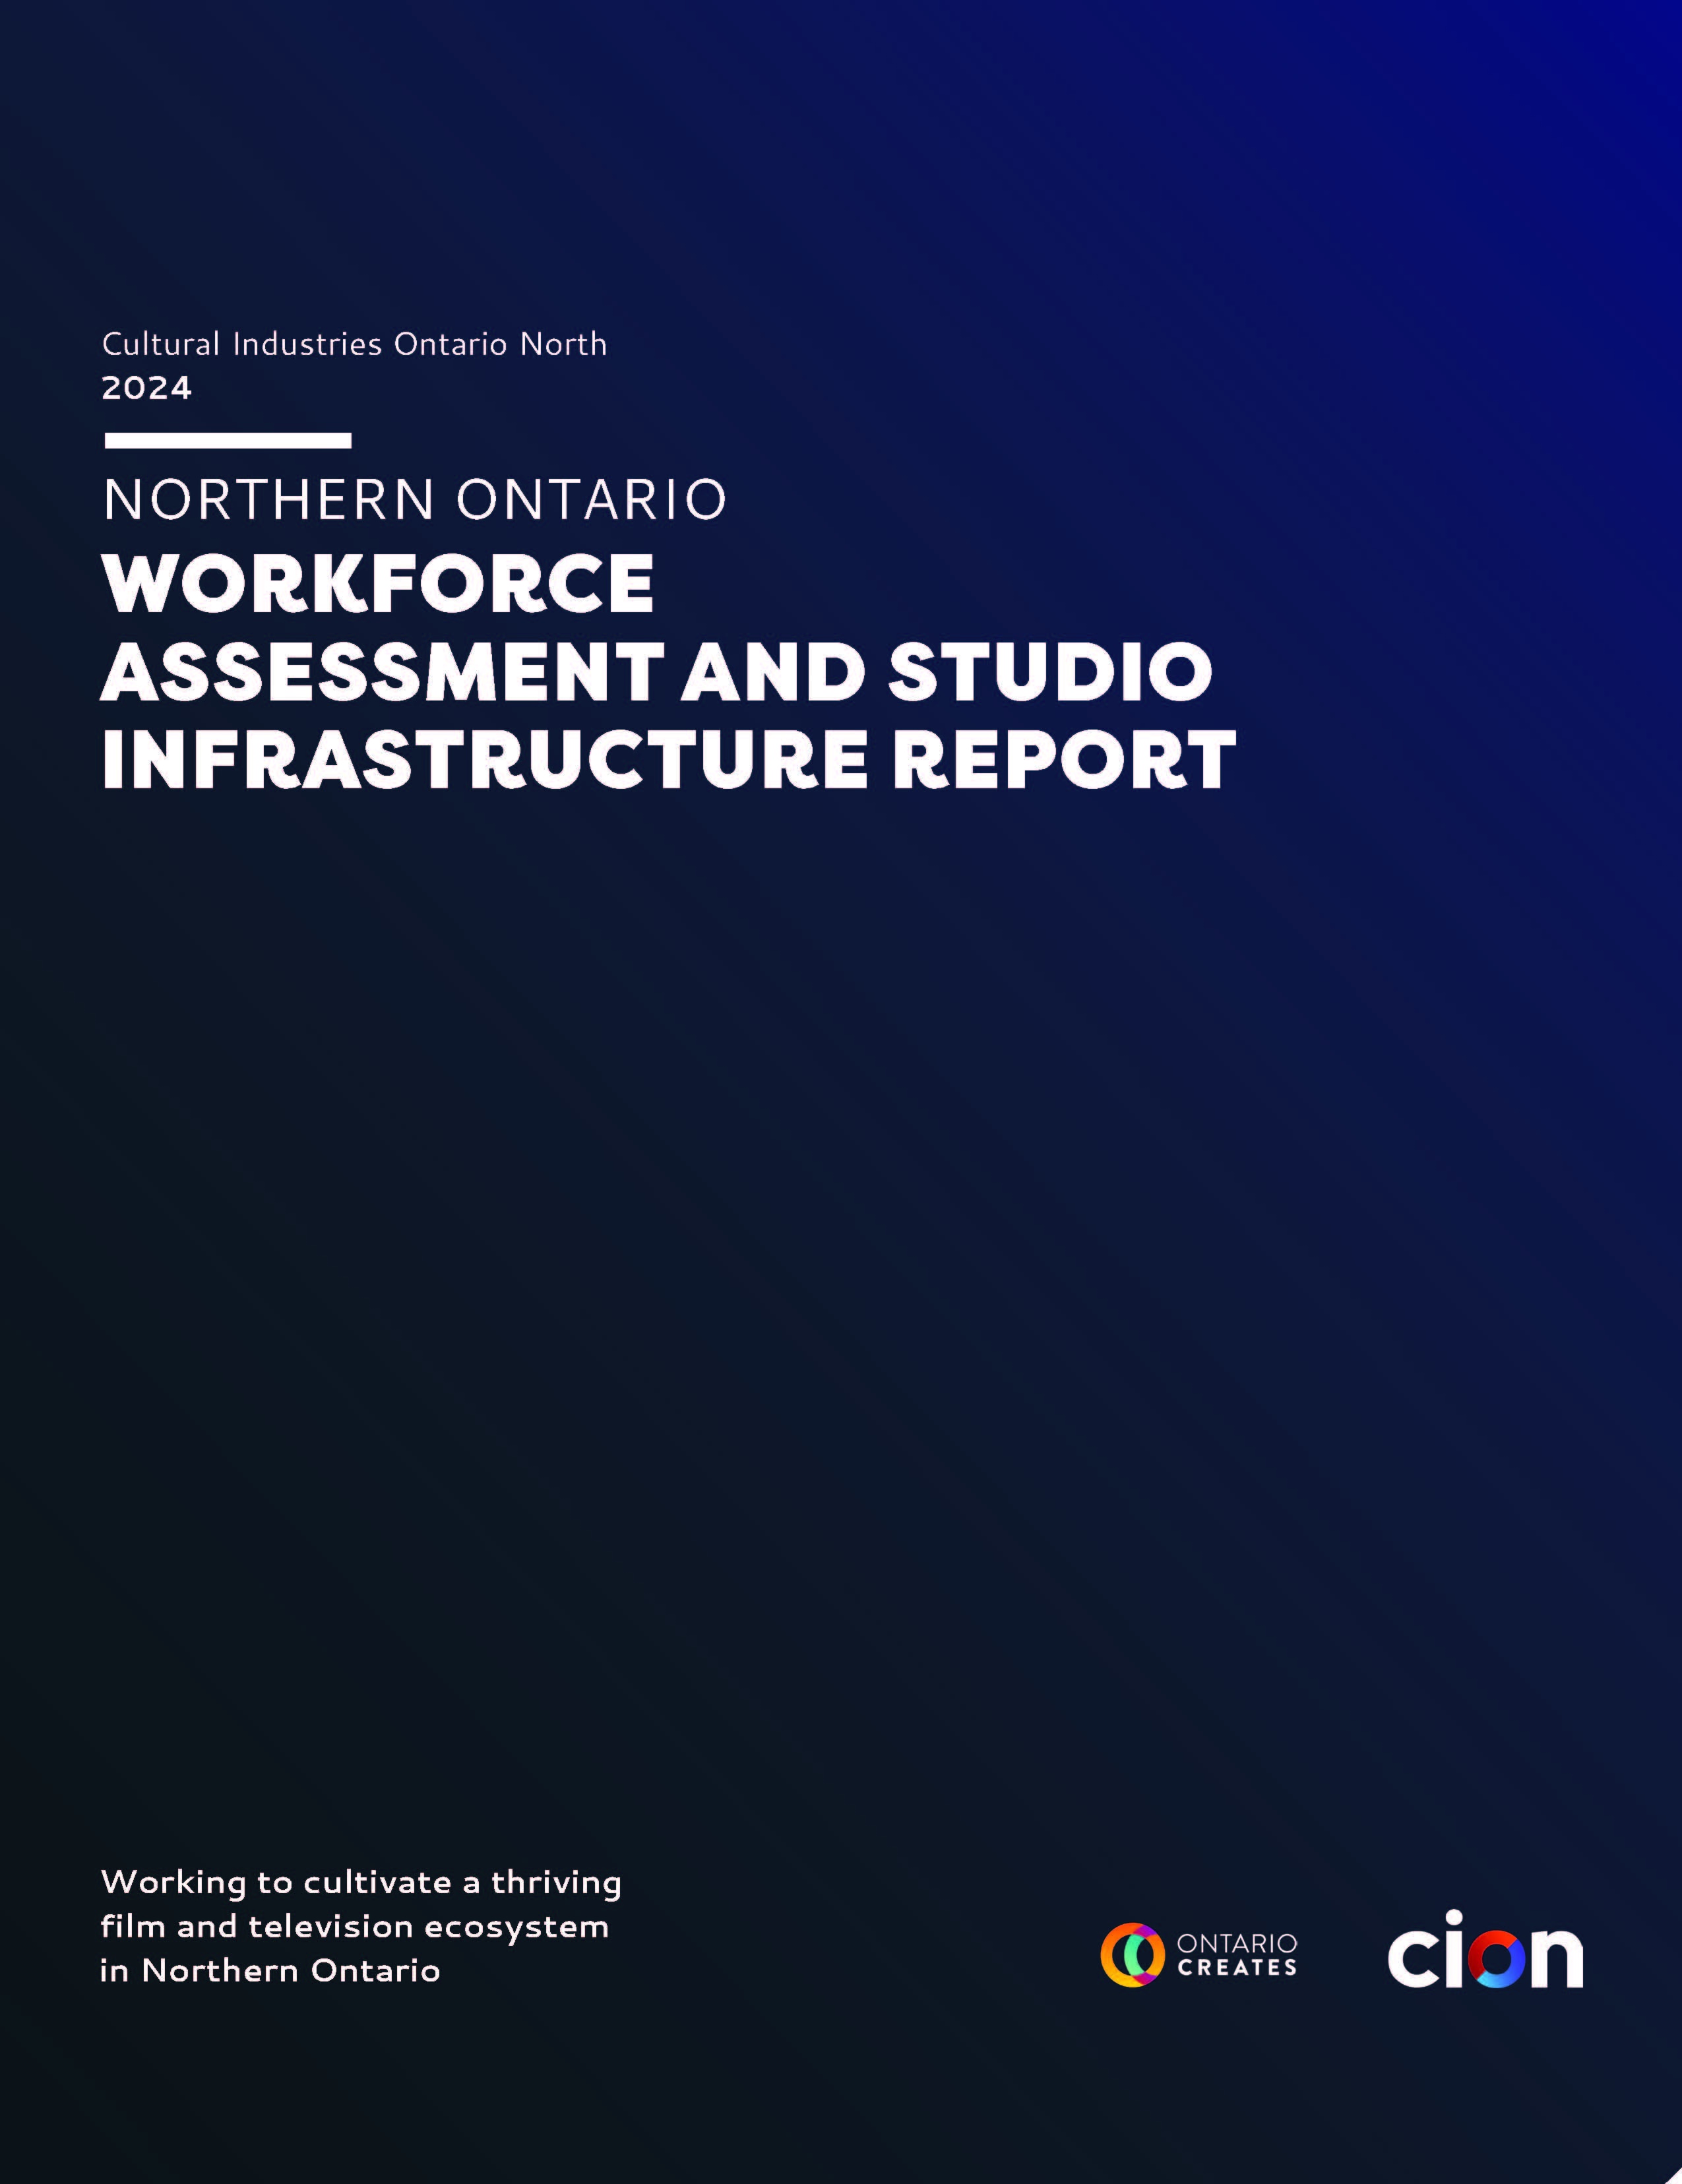 Rapport sur L’évaluation de la Main-D'Oeuvre et L’Infrastructure des Studios dans le Nord de l’Ontario